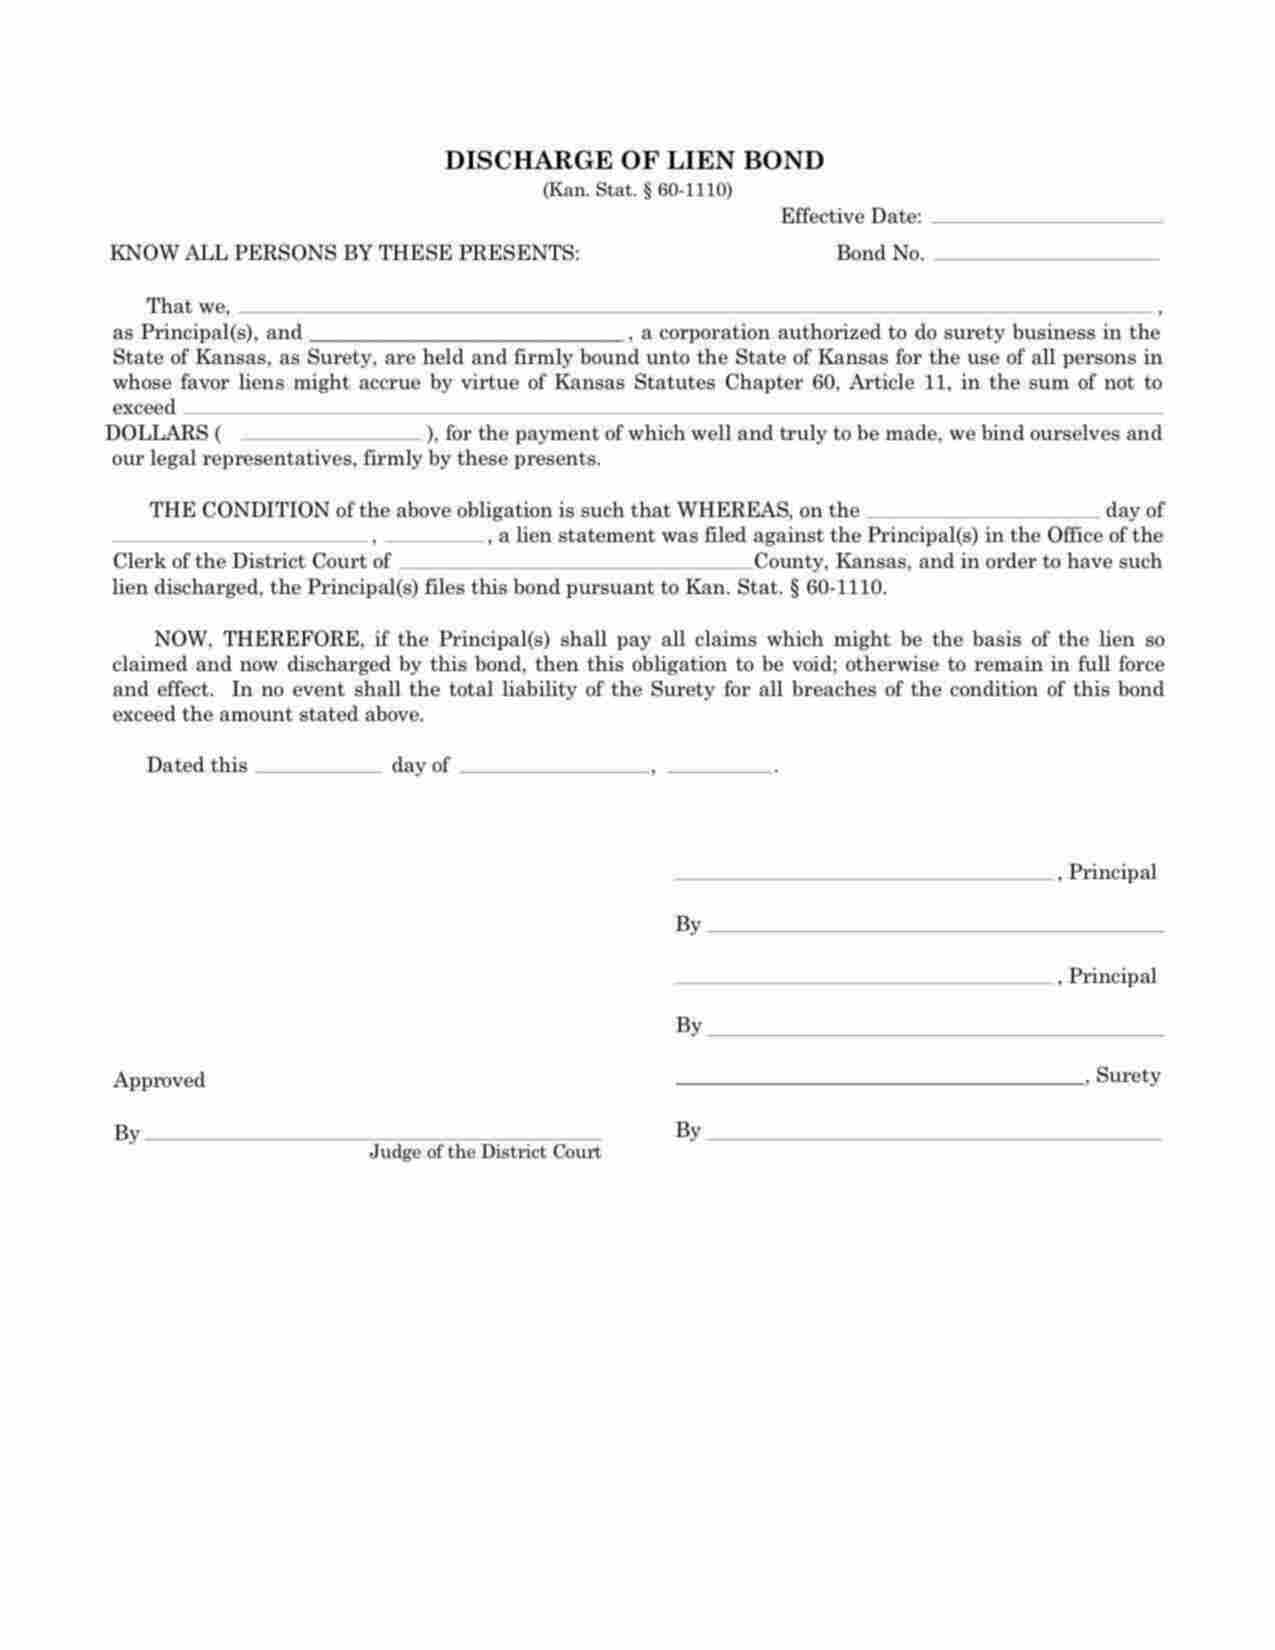 Kansas Discharge of Lien Bond Form